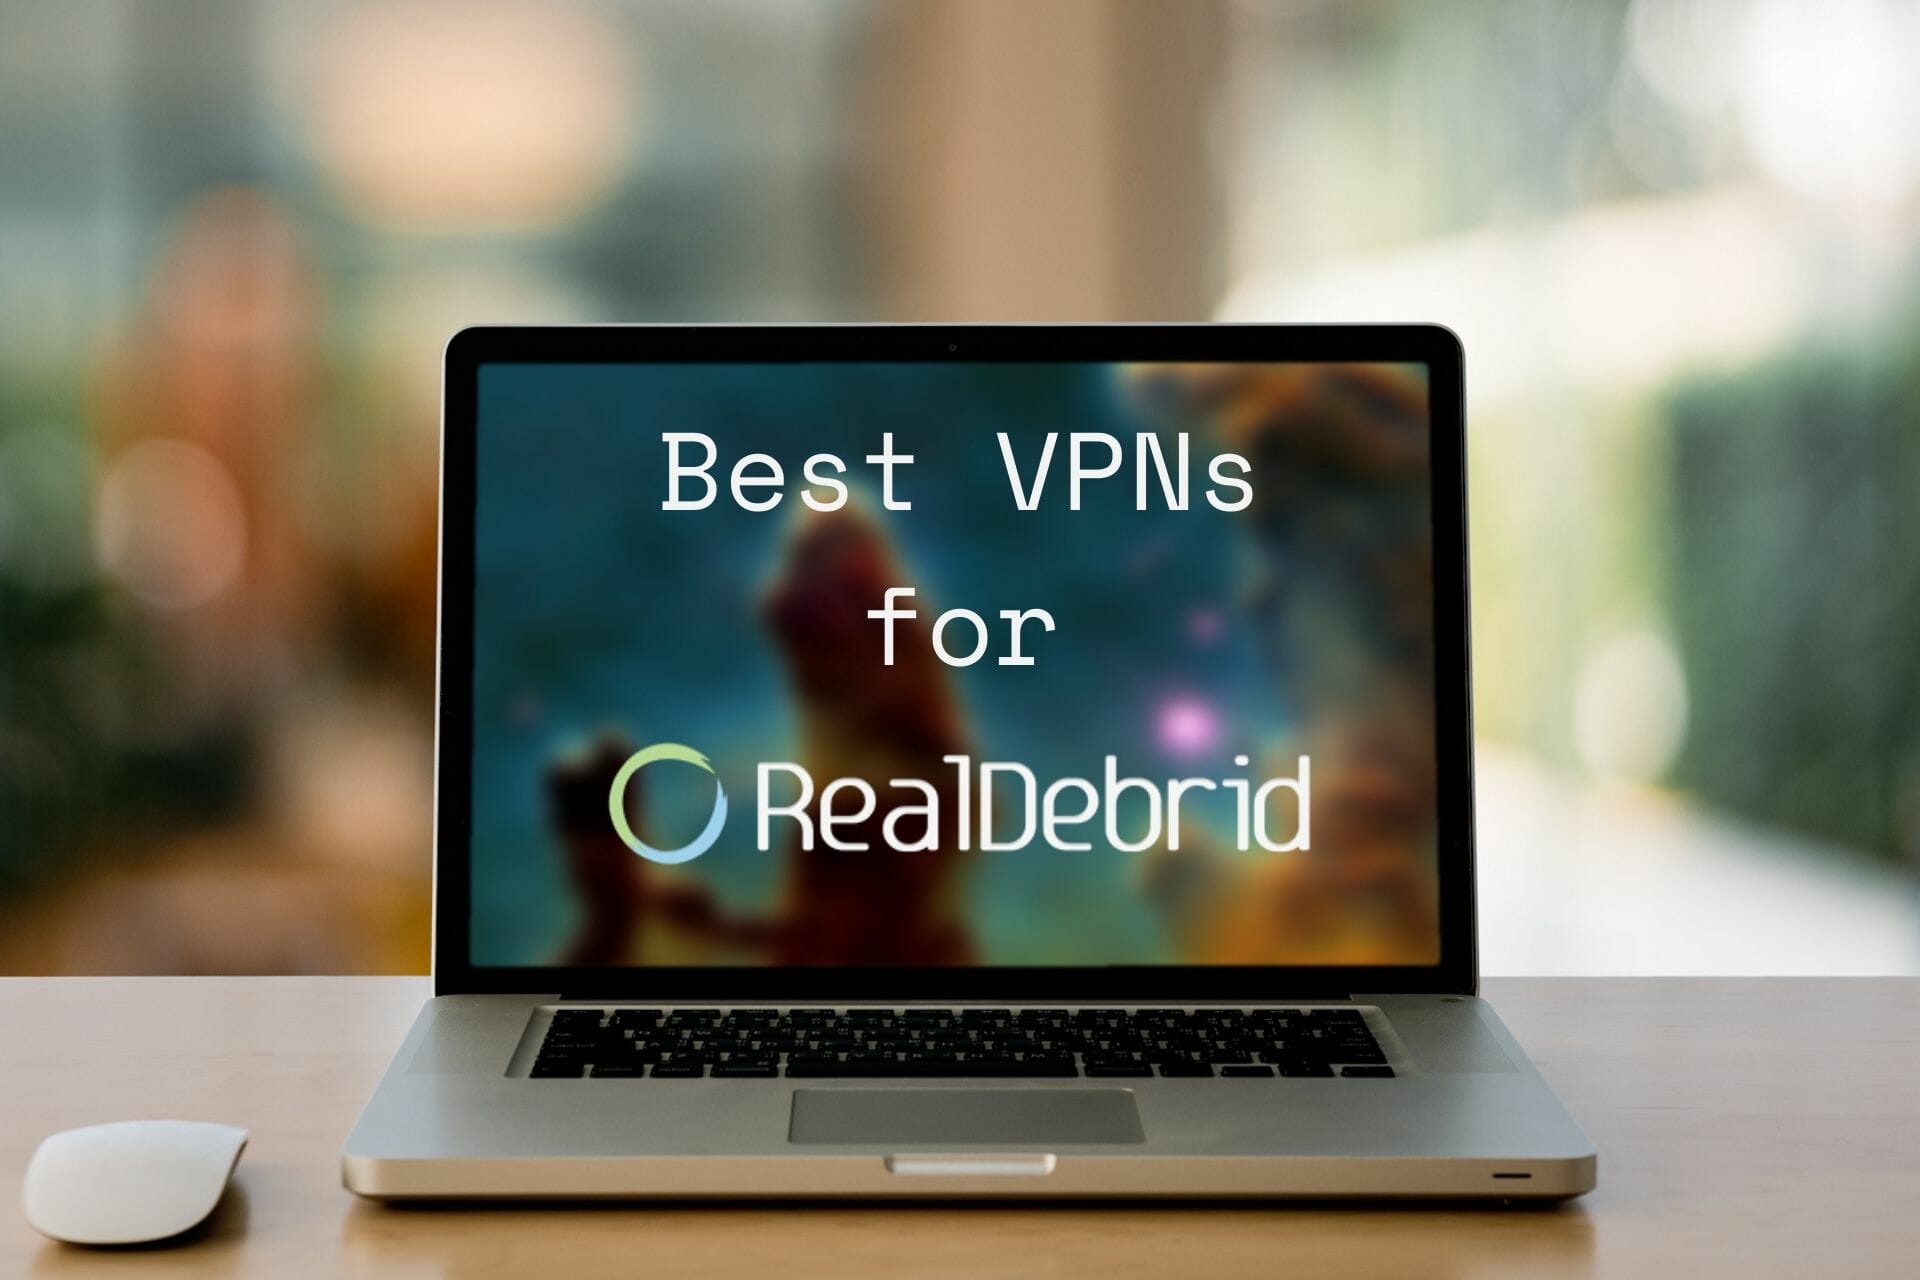 Best VPNs for Real-Debrid